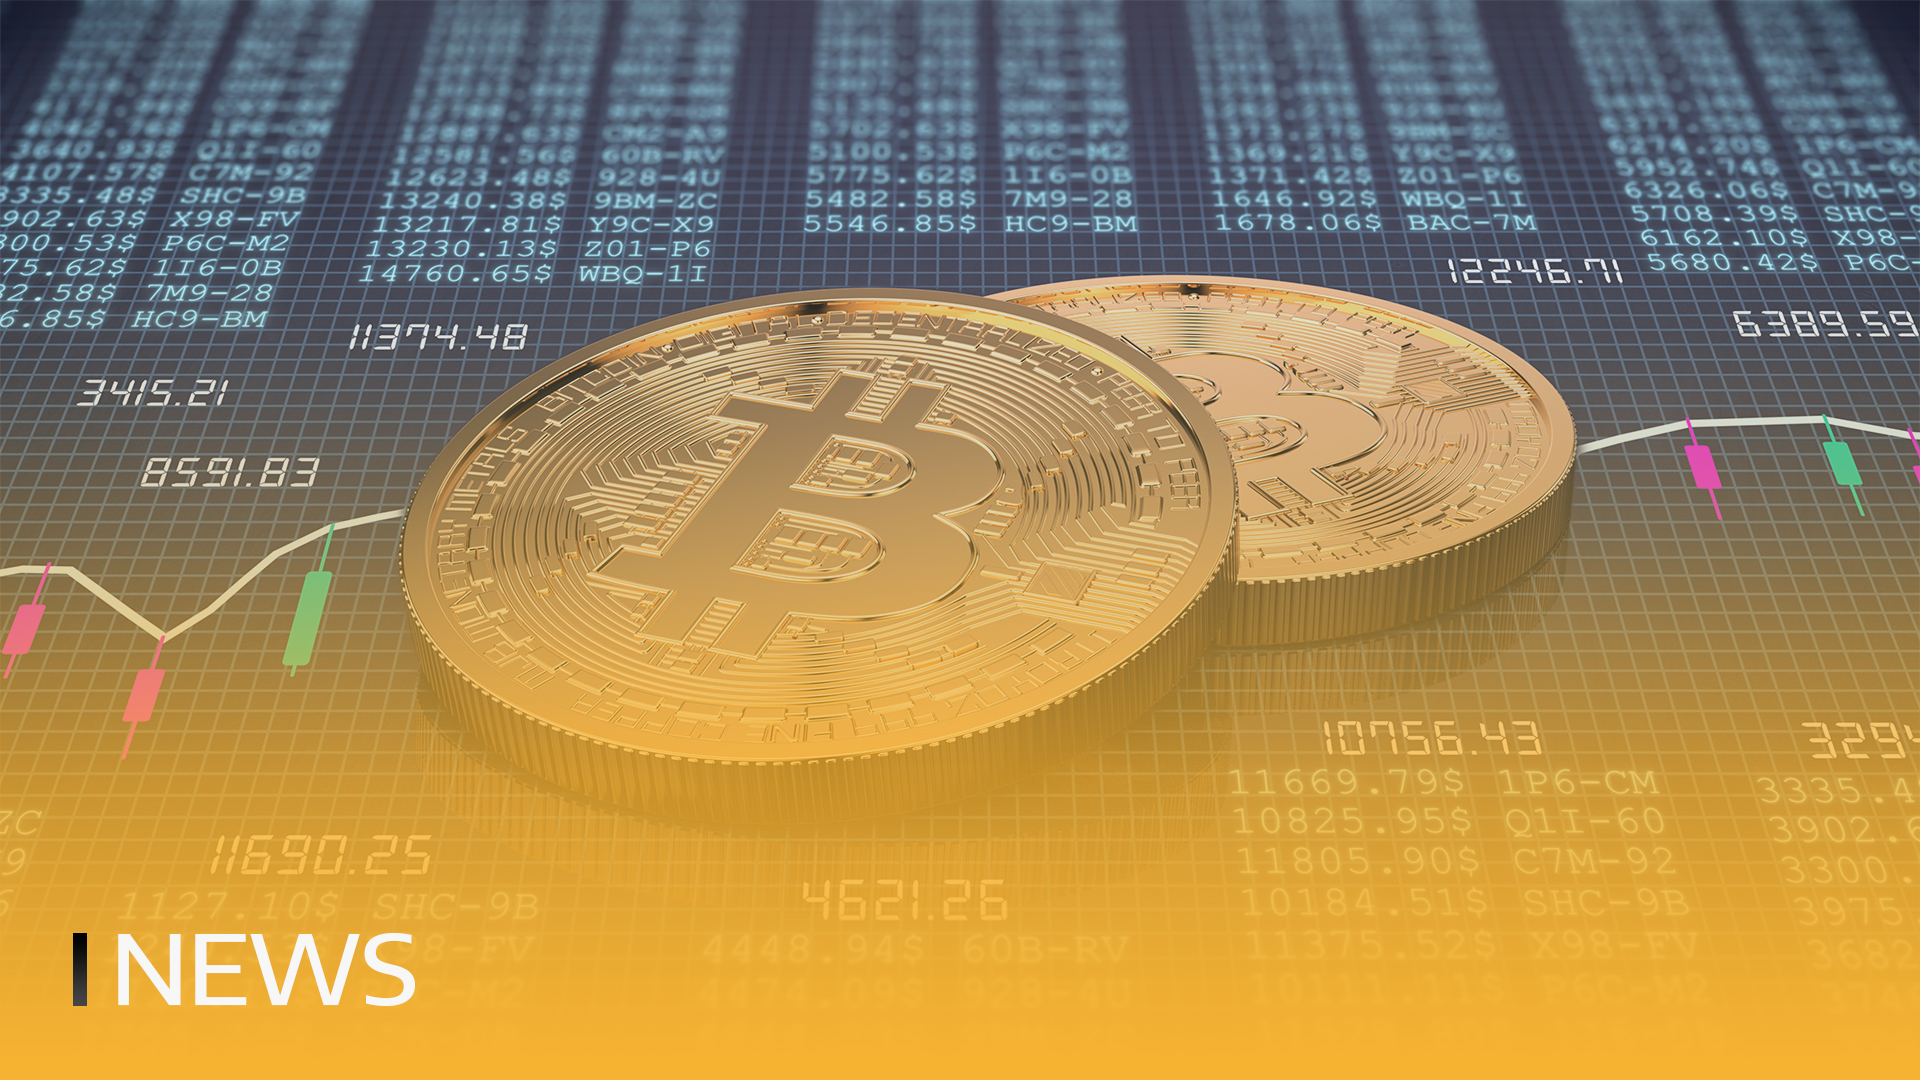 Las transacciones diarias de Bitcoin alcanzan un nuevo récord